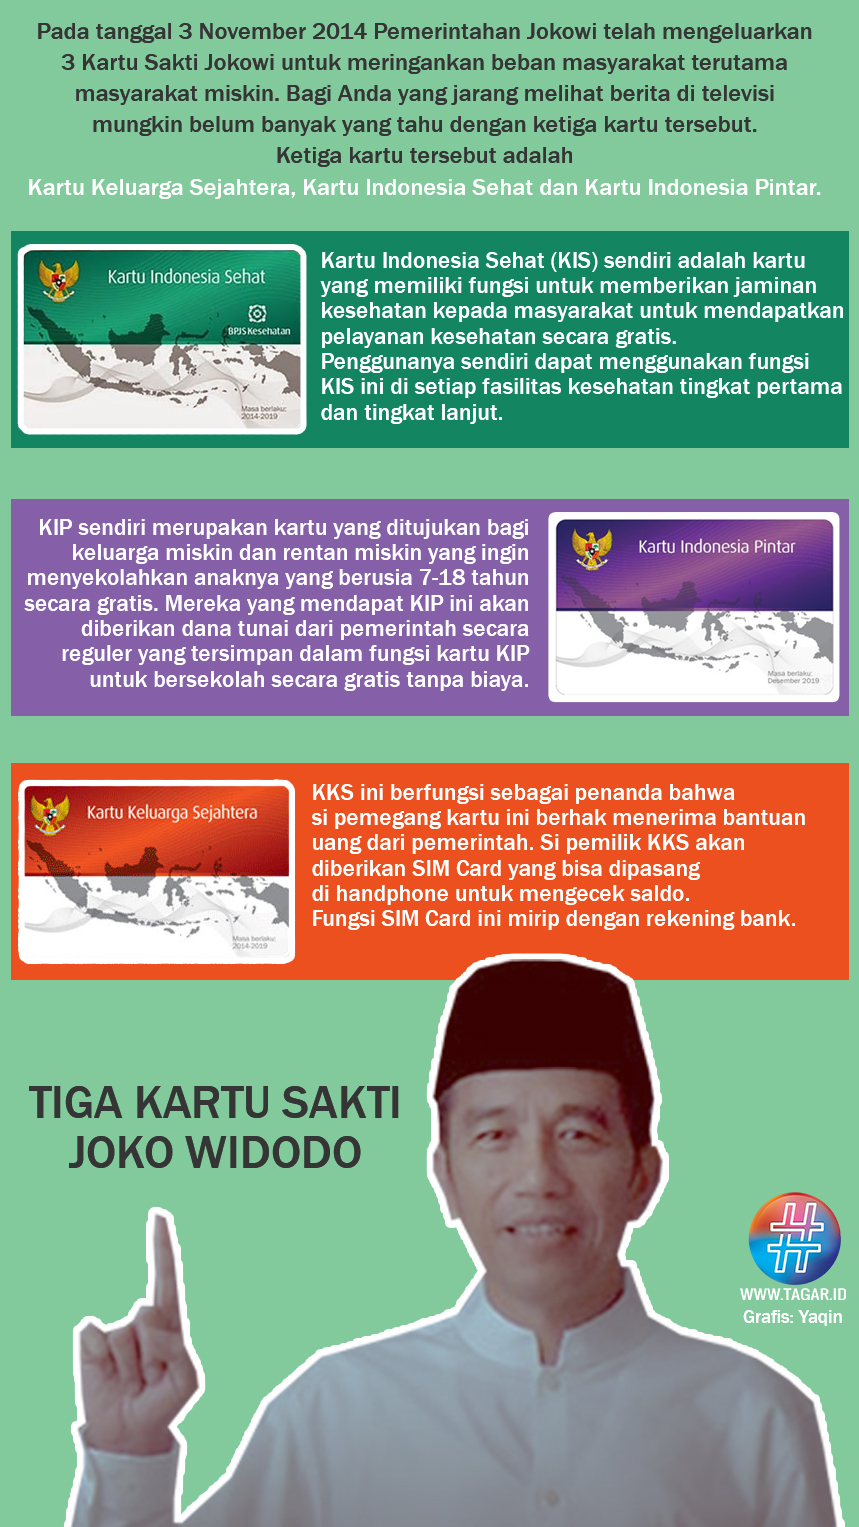 Tiga Kartu Sakti Jokowi yang Sudah Dijalankan